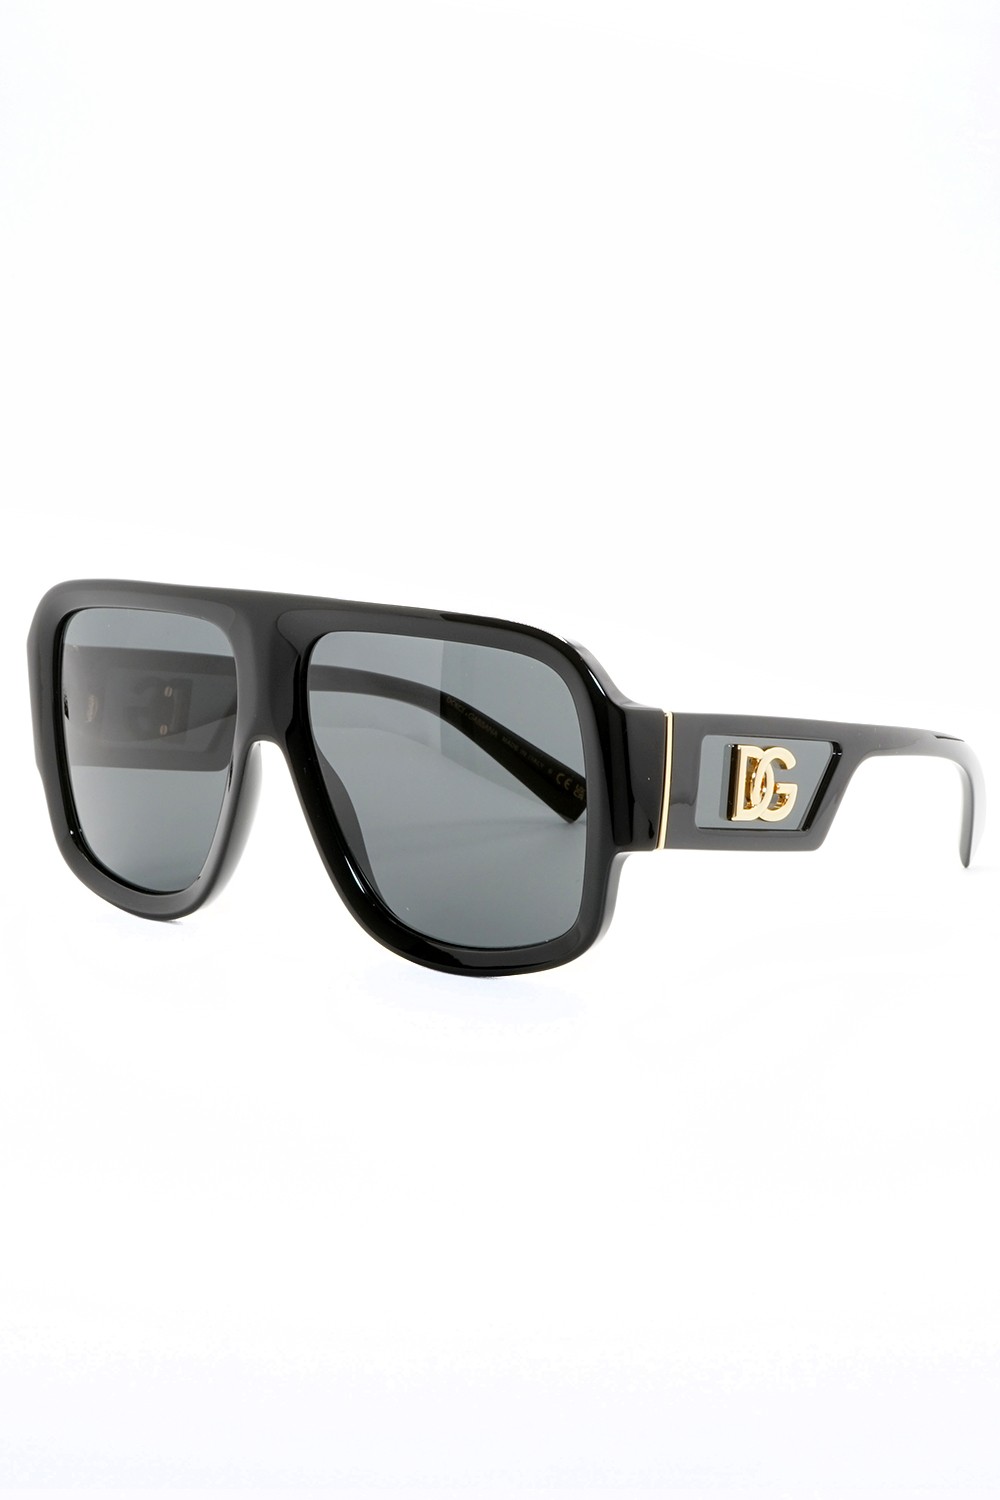 Dolce&Gabbana - Occhiali da sole in celluloide squadrati unisex nero - DG4401